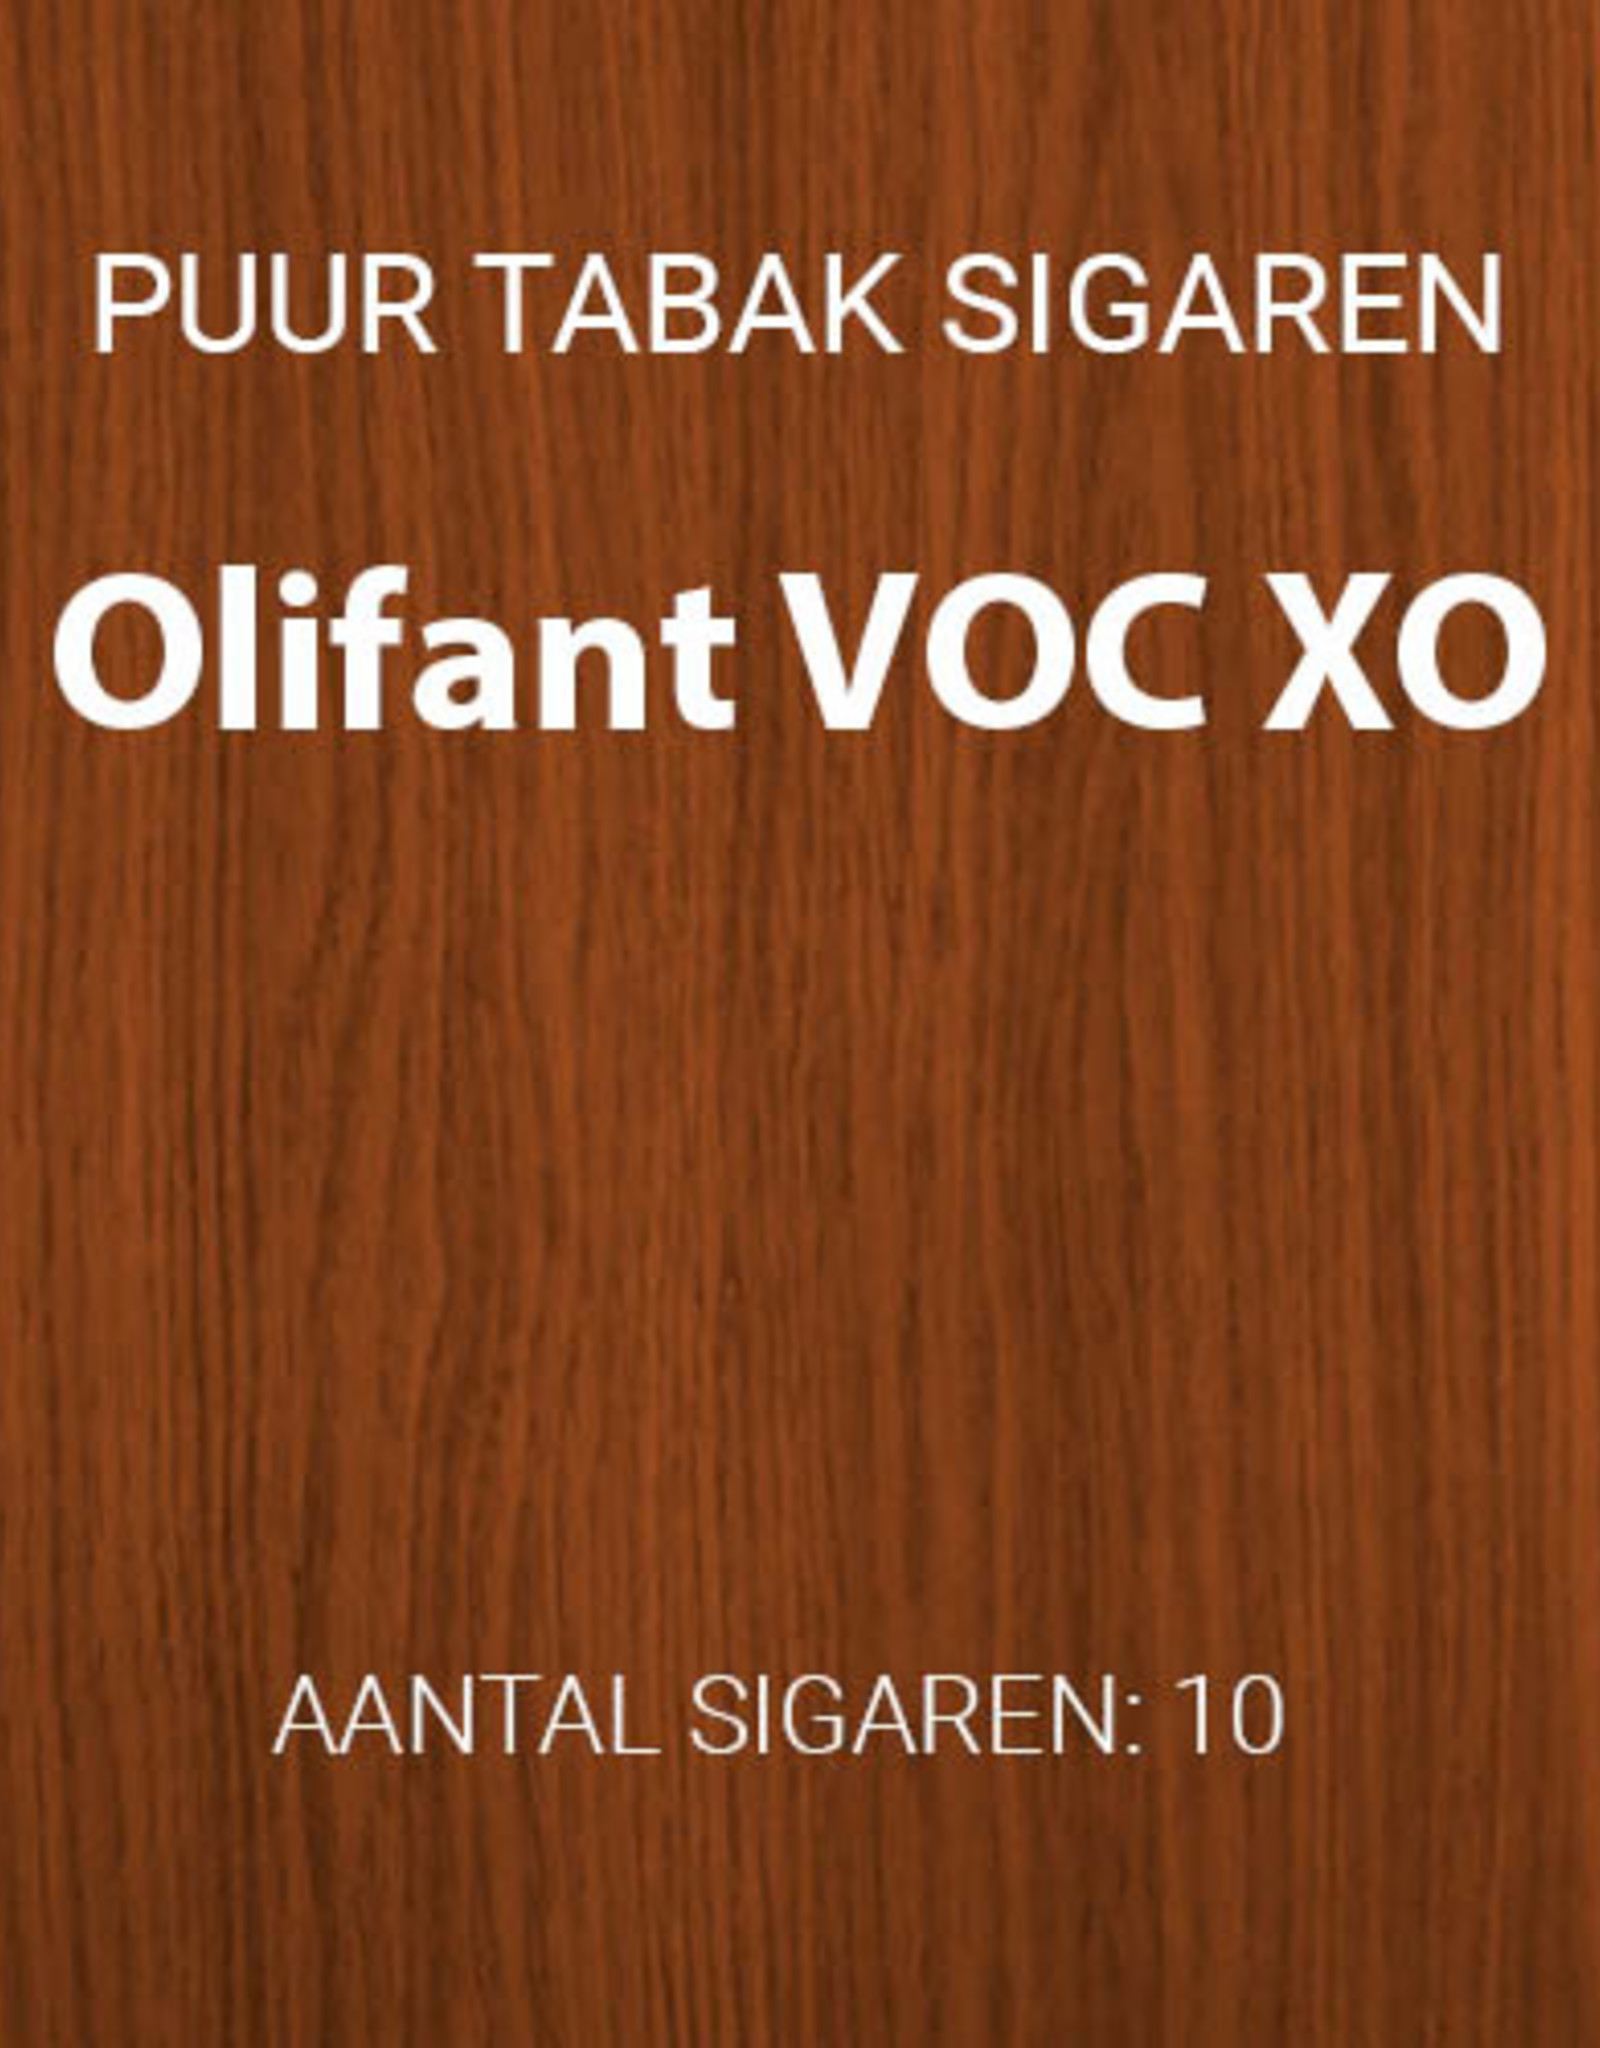 Olifant VOC XO